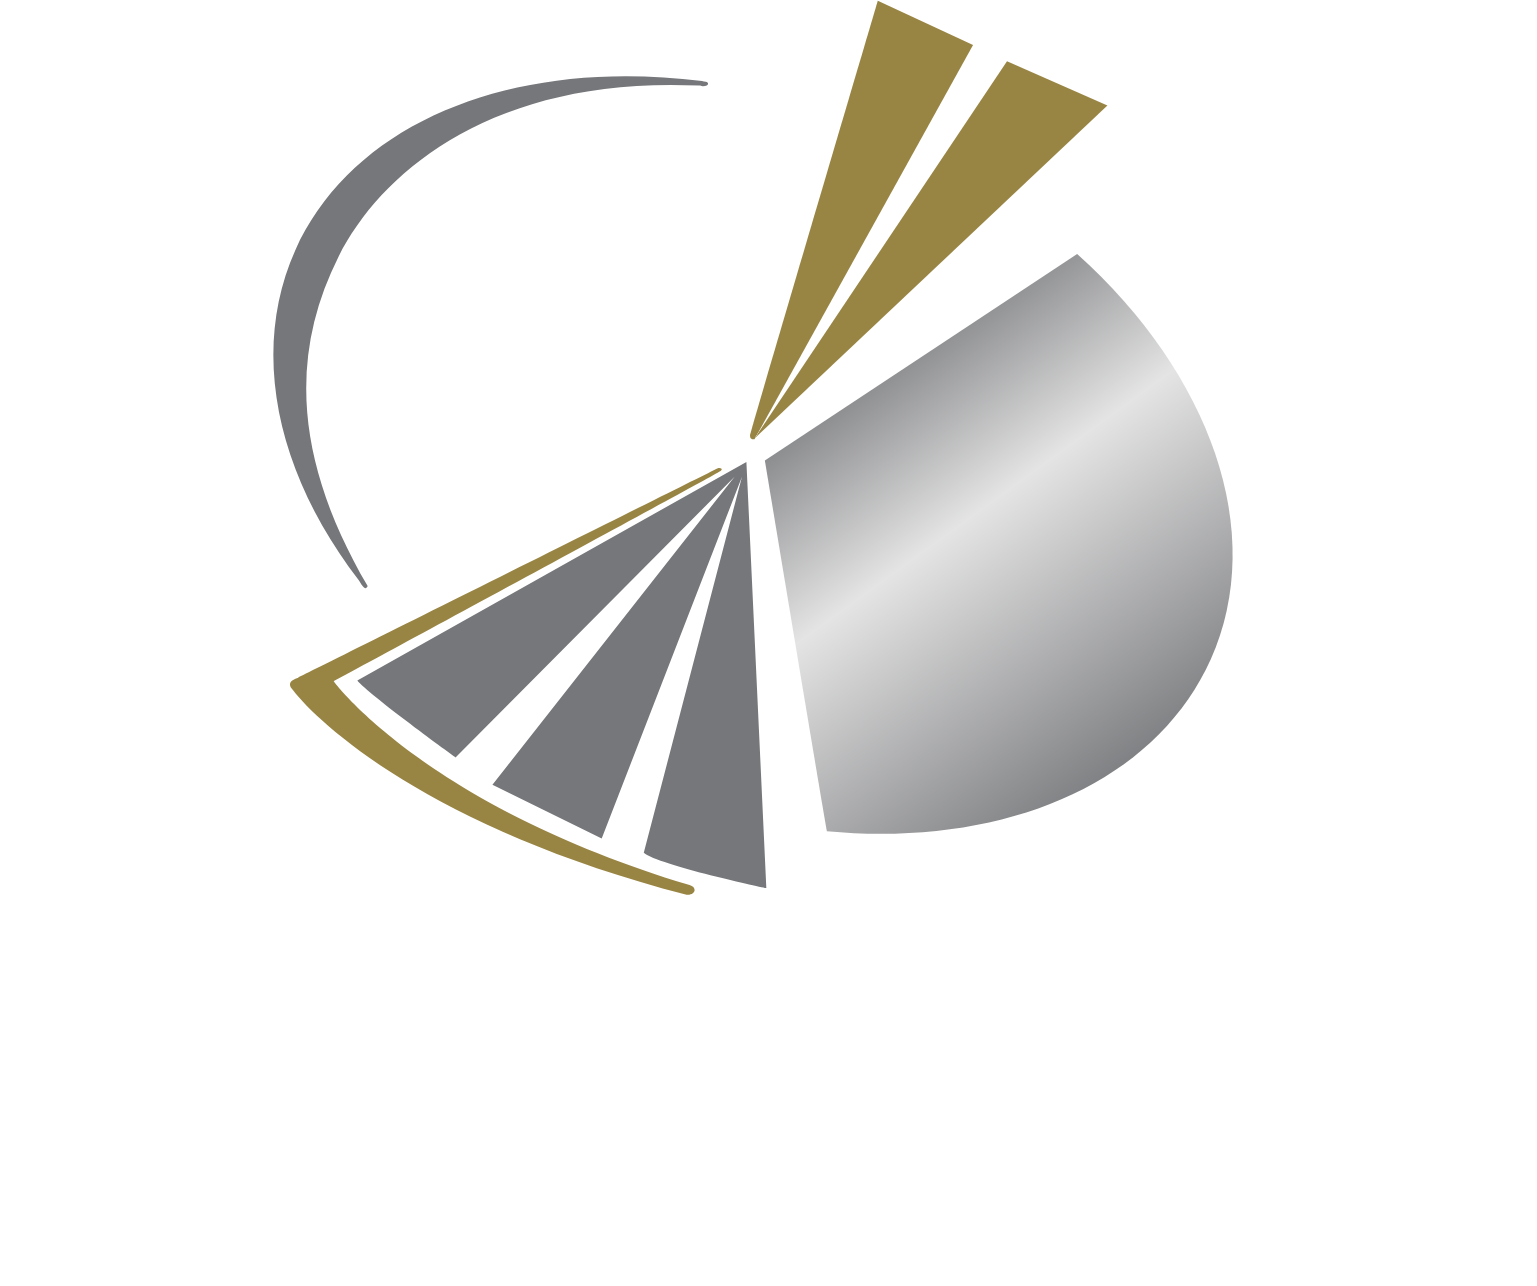 Qatari Investors Group Logo groß für dunkle Hintergründe (transparentes PNG)